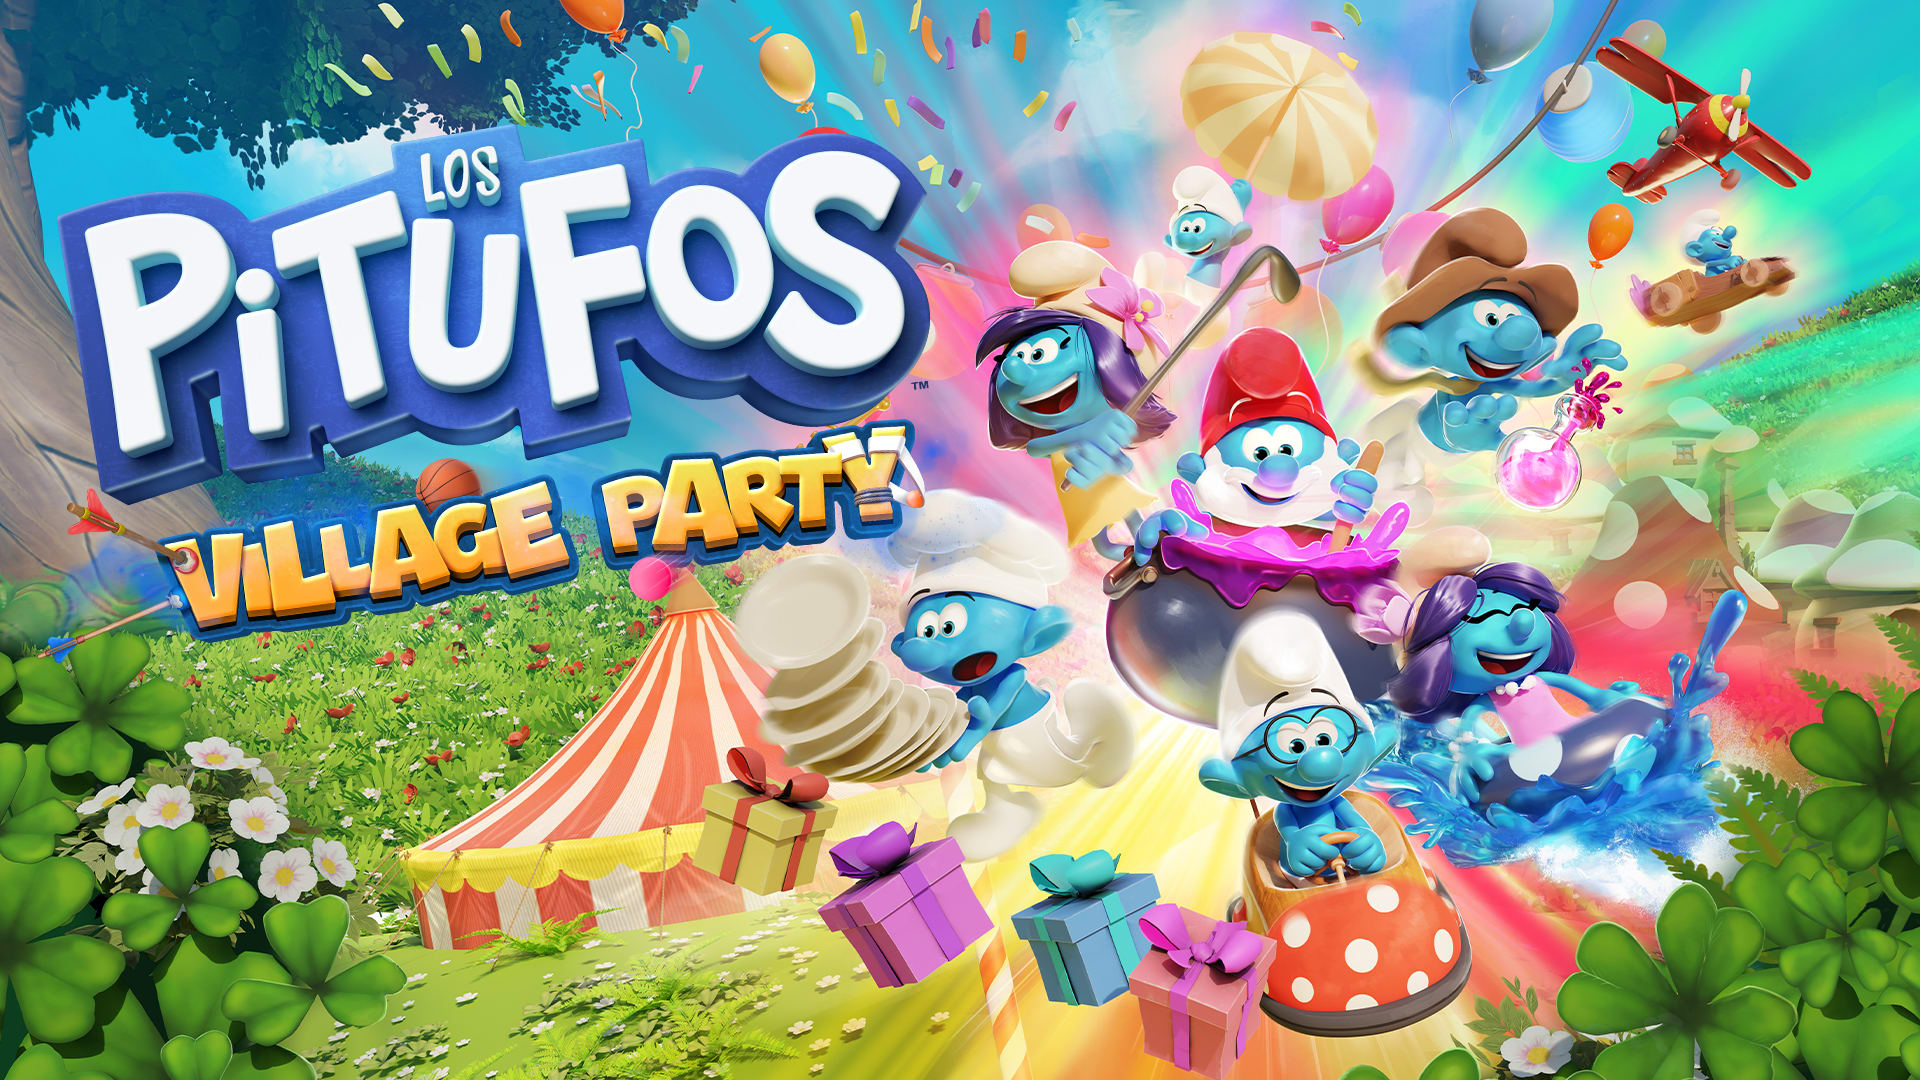 Los Pitufos - Village Party